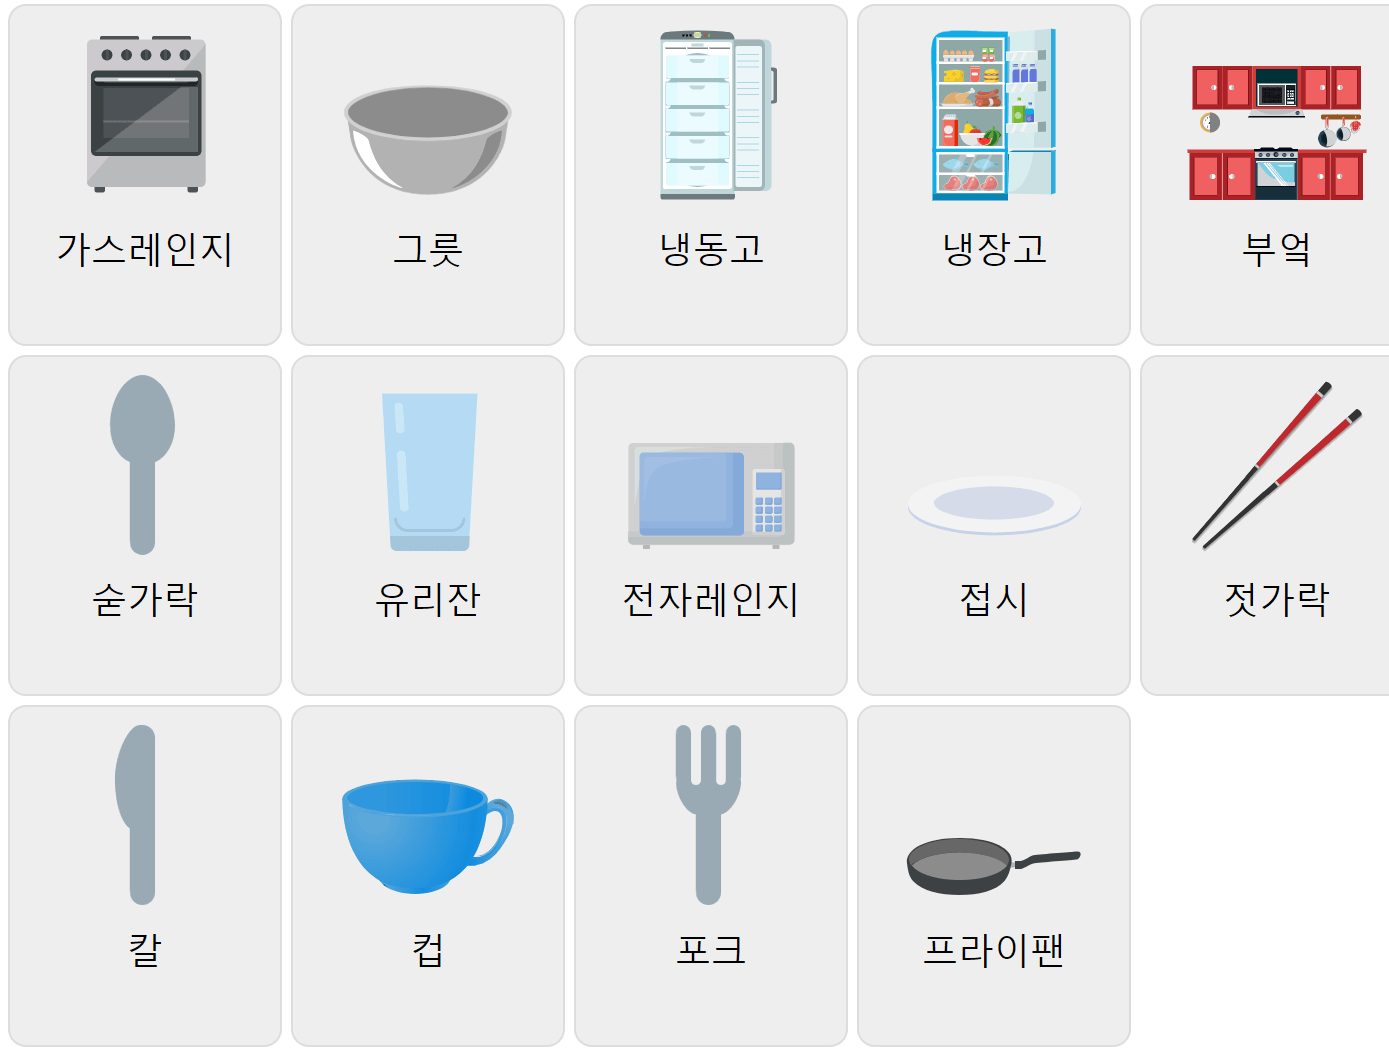 Köksord på koreanska